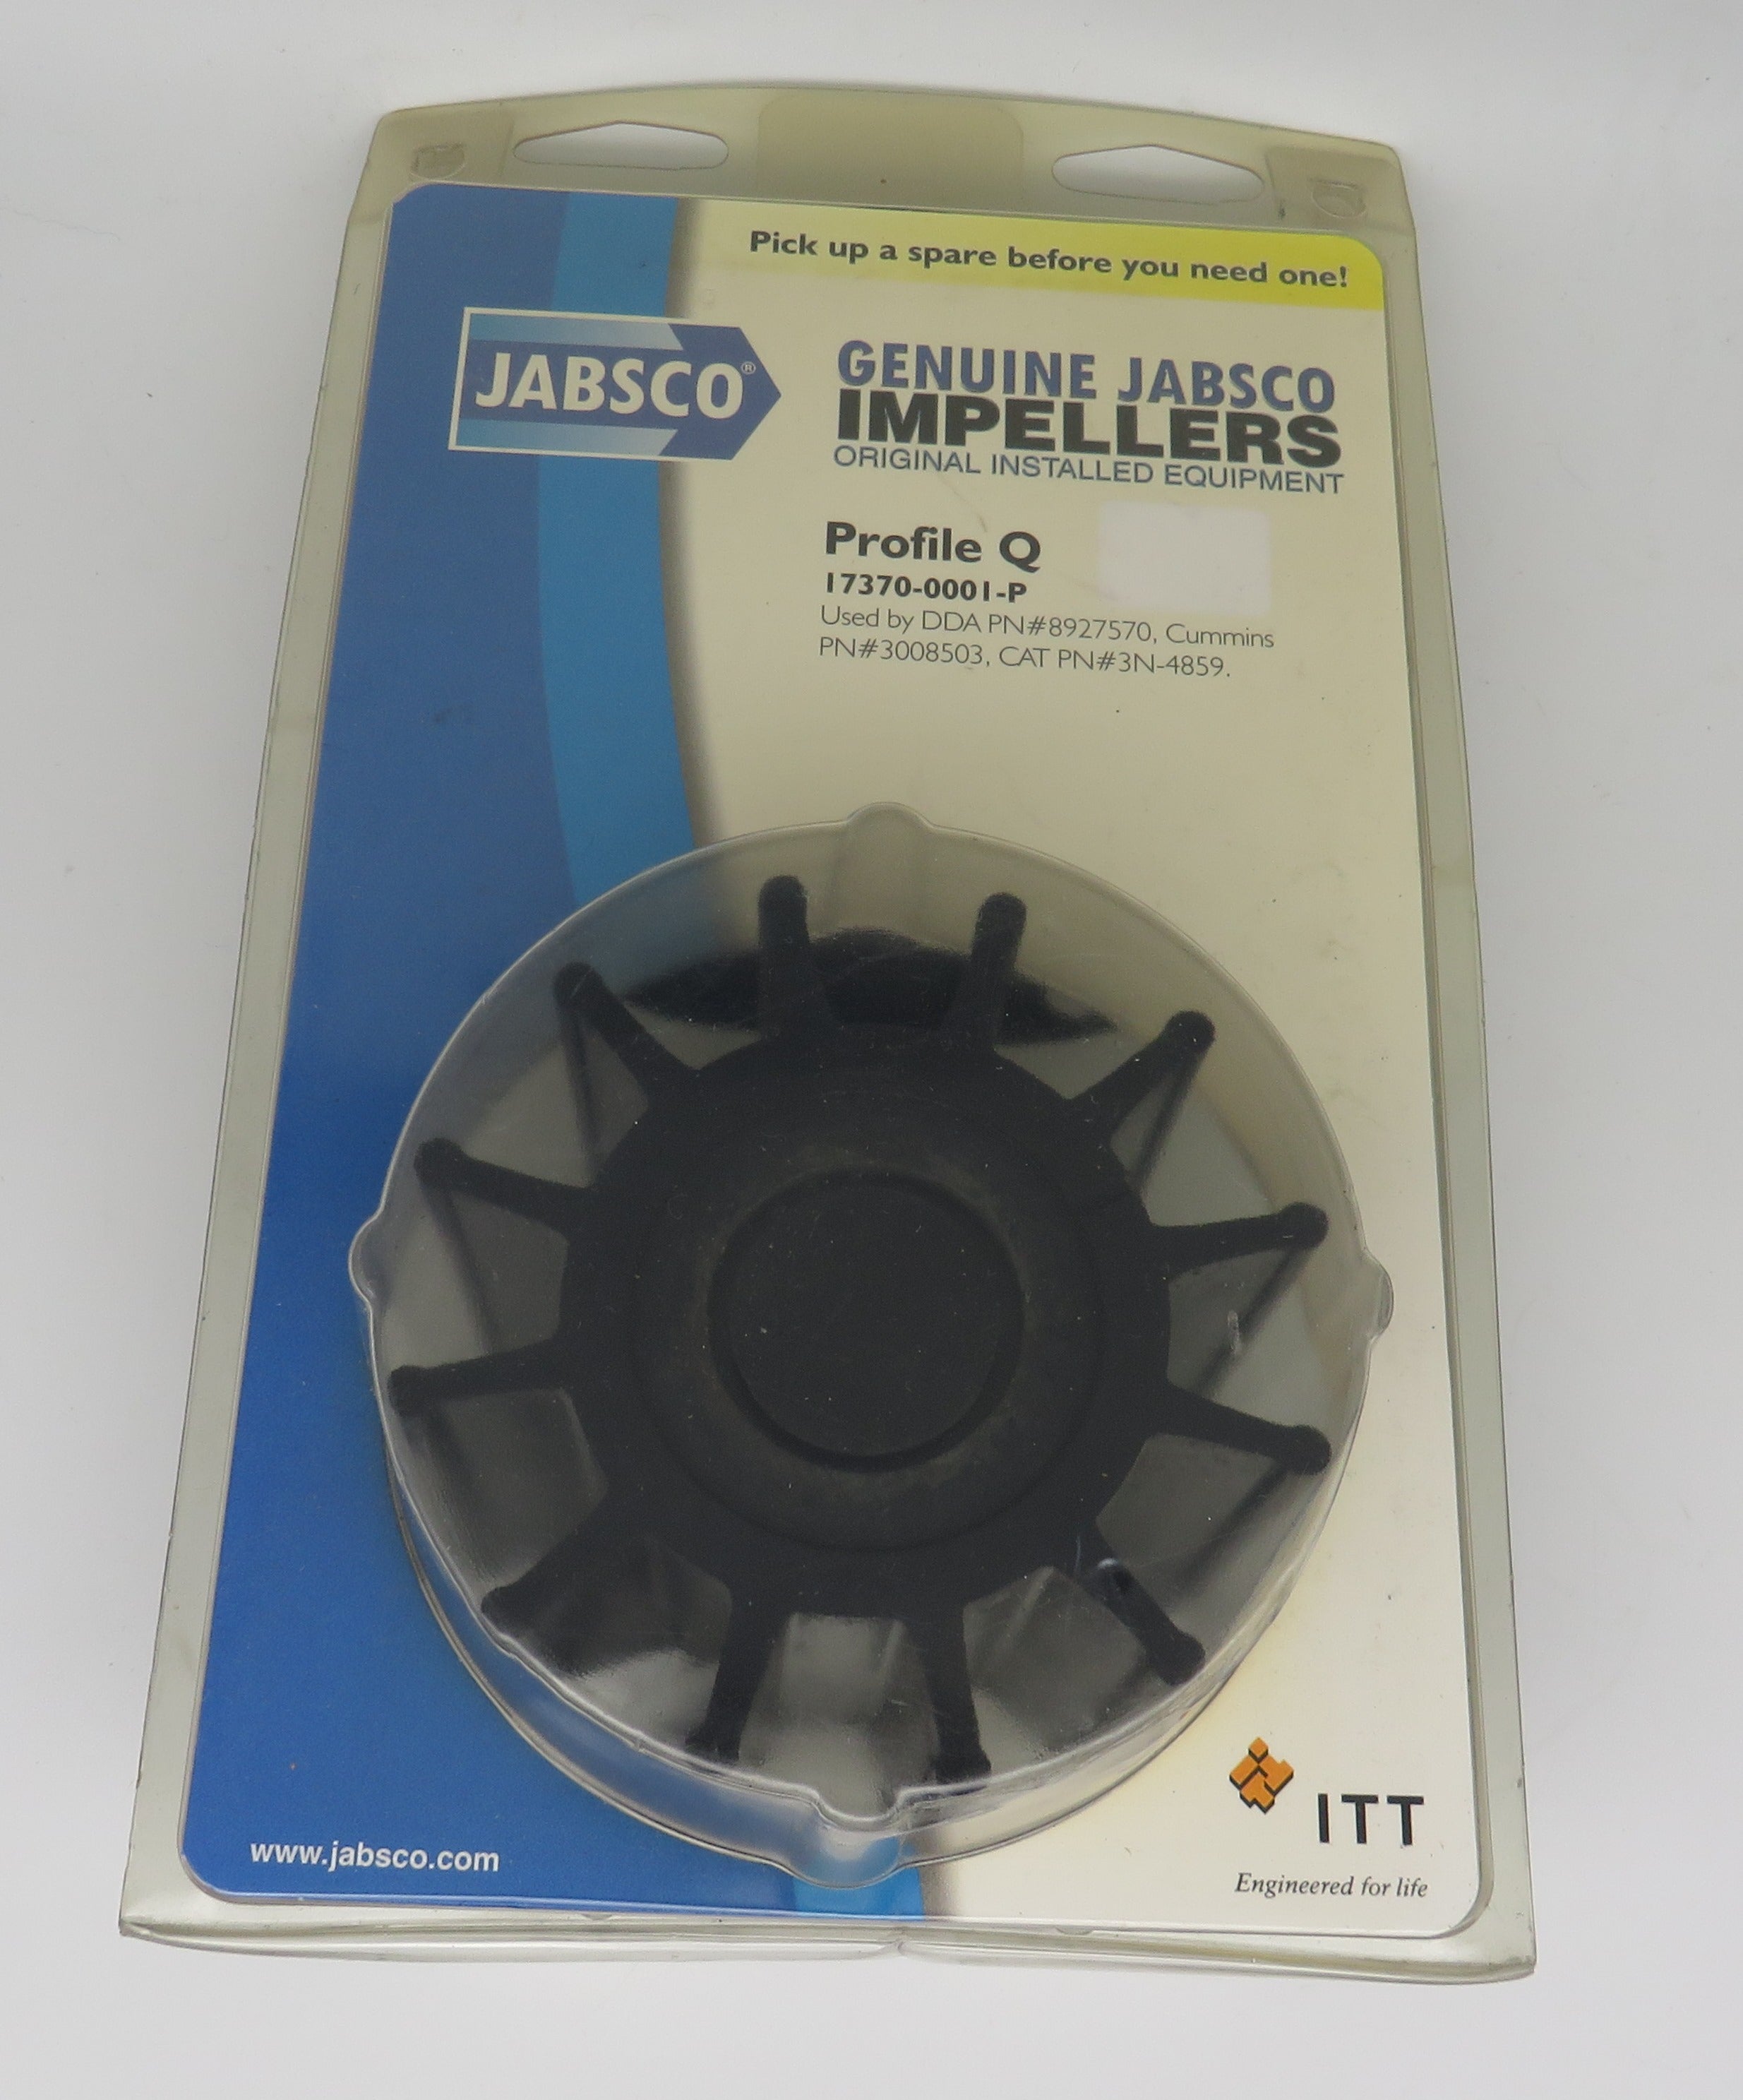 17370-0001-P Jabsco Par Impeller Kit Profile Q